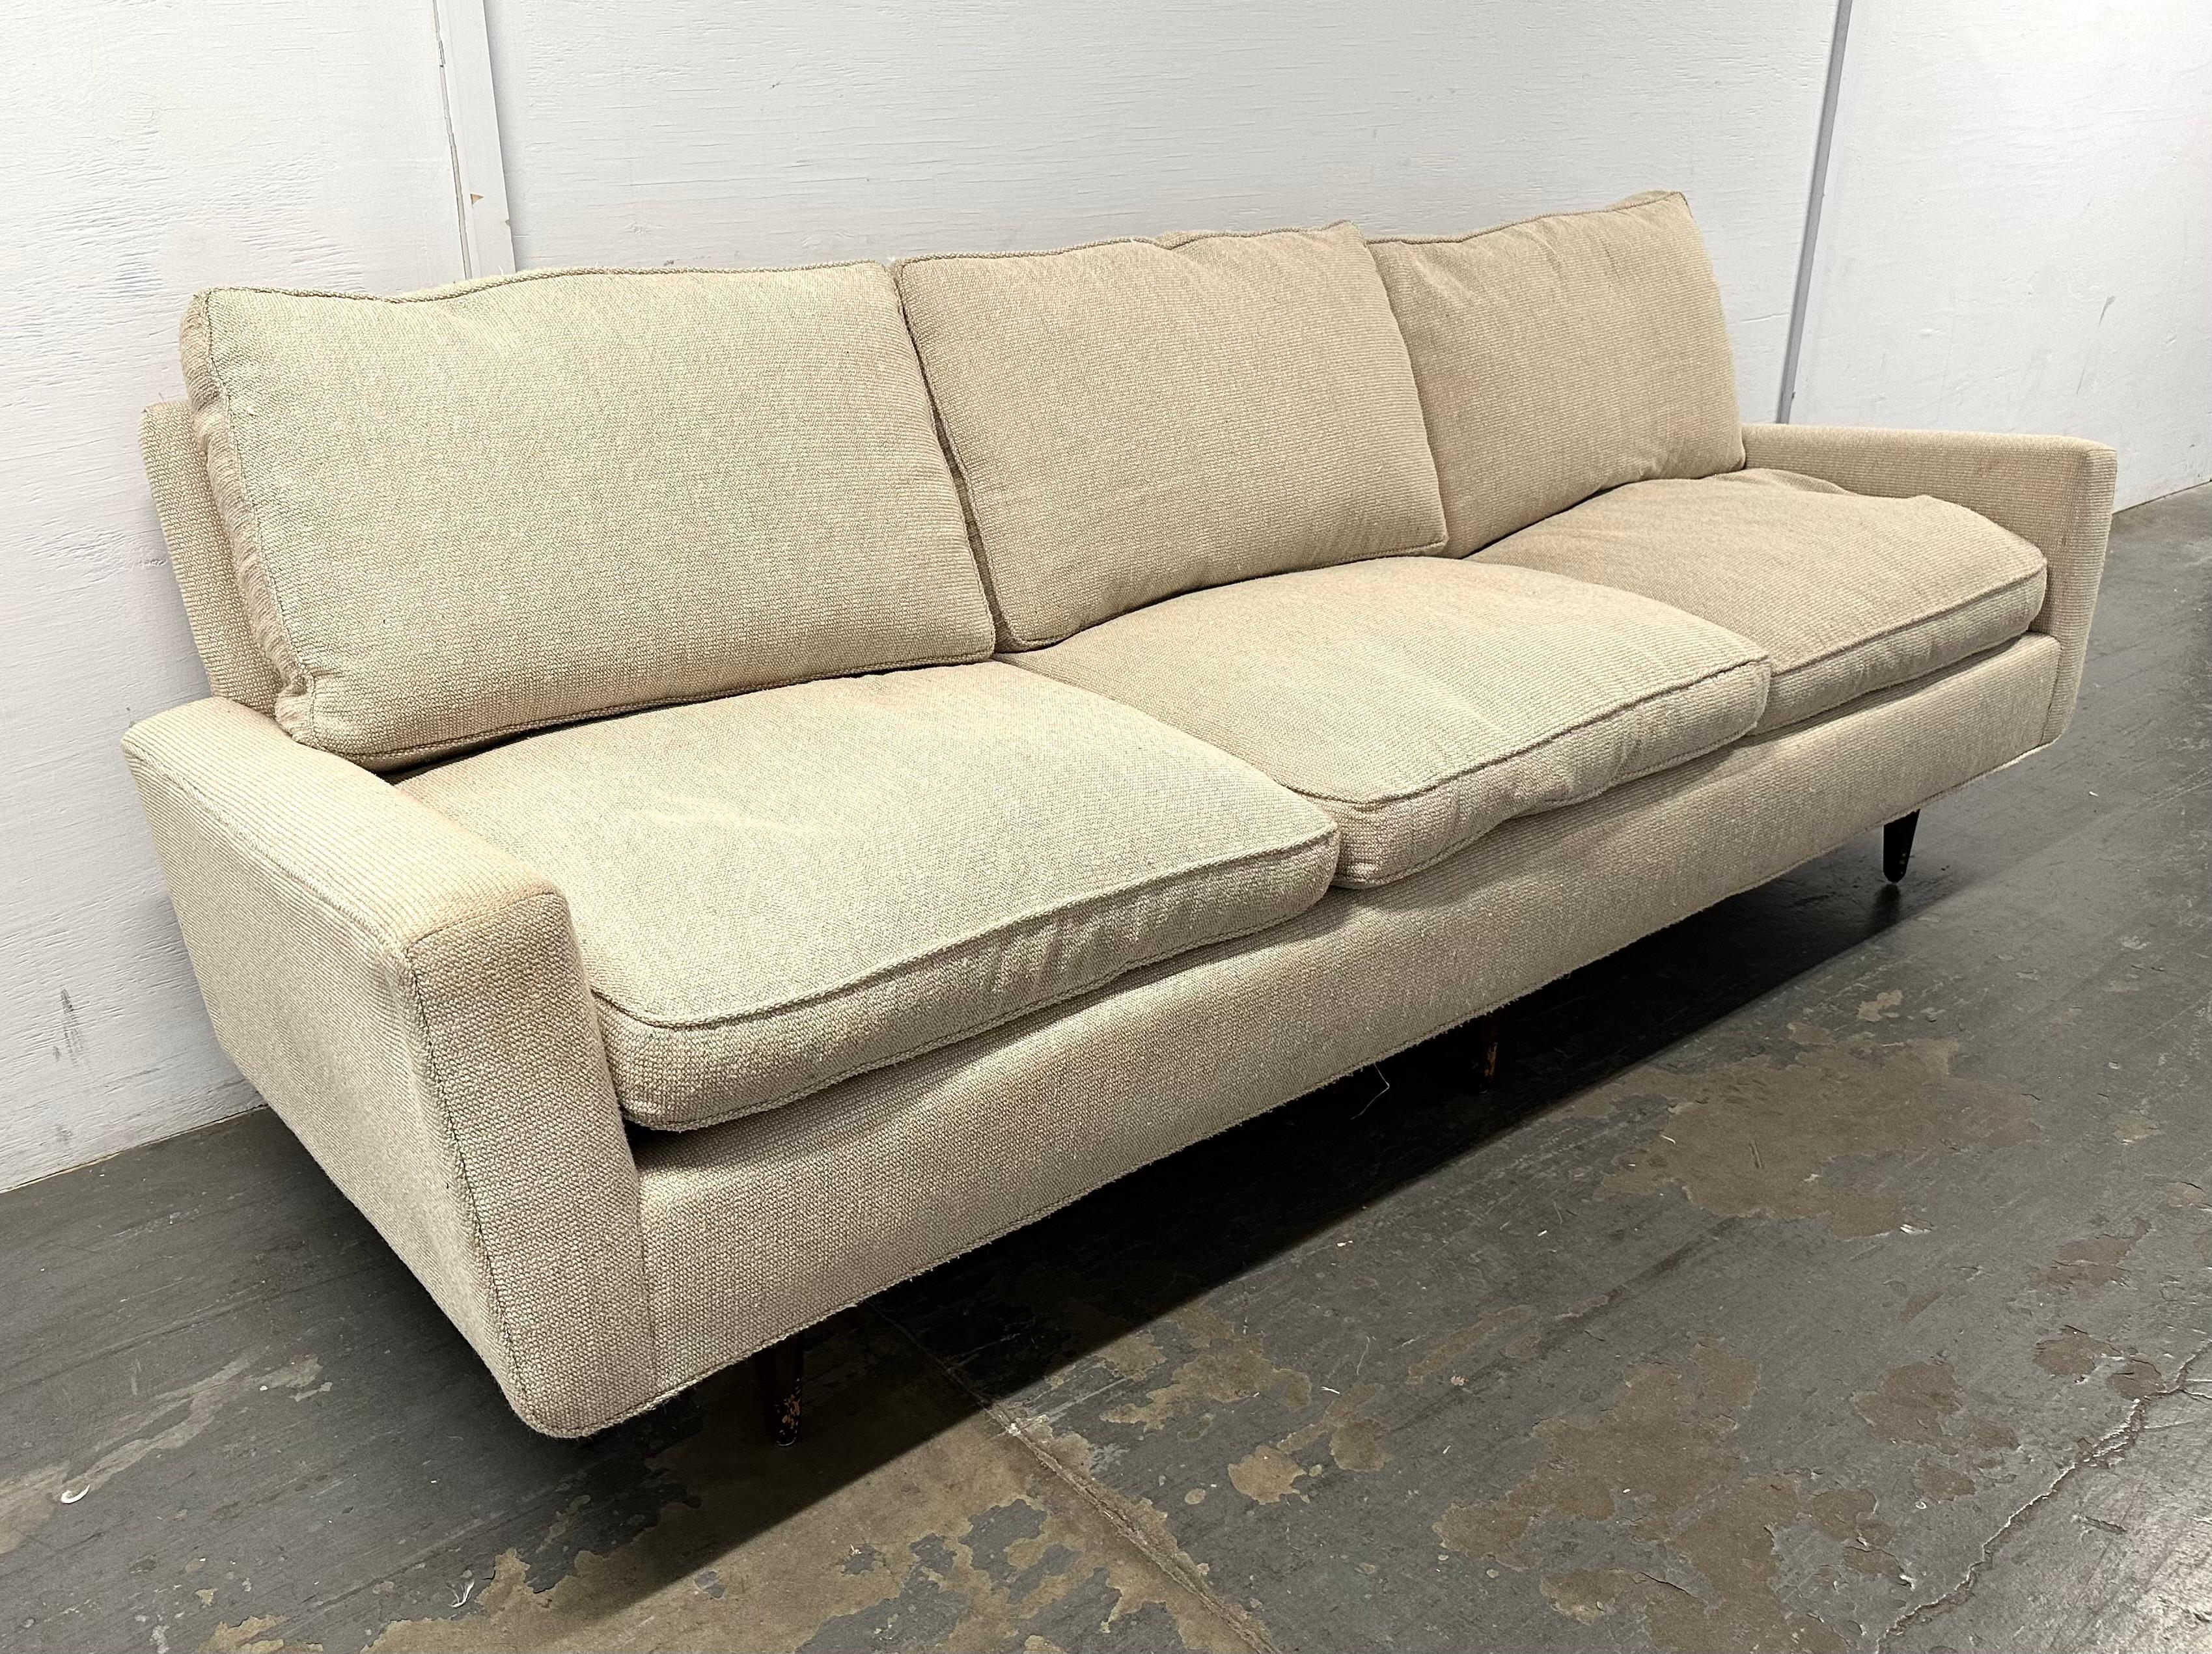 Sehr frühes Florence-Knoll-Sofa, ca. Ende der 1940er Jahre, in altem, haferflockenfarbenem, genopptem Knoll-Wollstoff, mit Daunen-Sitz- und Rückenkissen. Durch die sechs eingesetzten Beine scheint das Sofa zu schweben. Der Rahmen aus Hartholz und